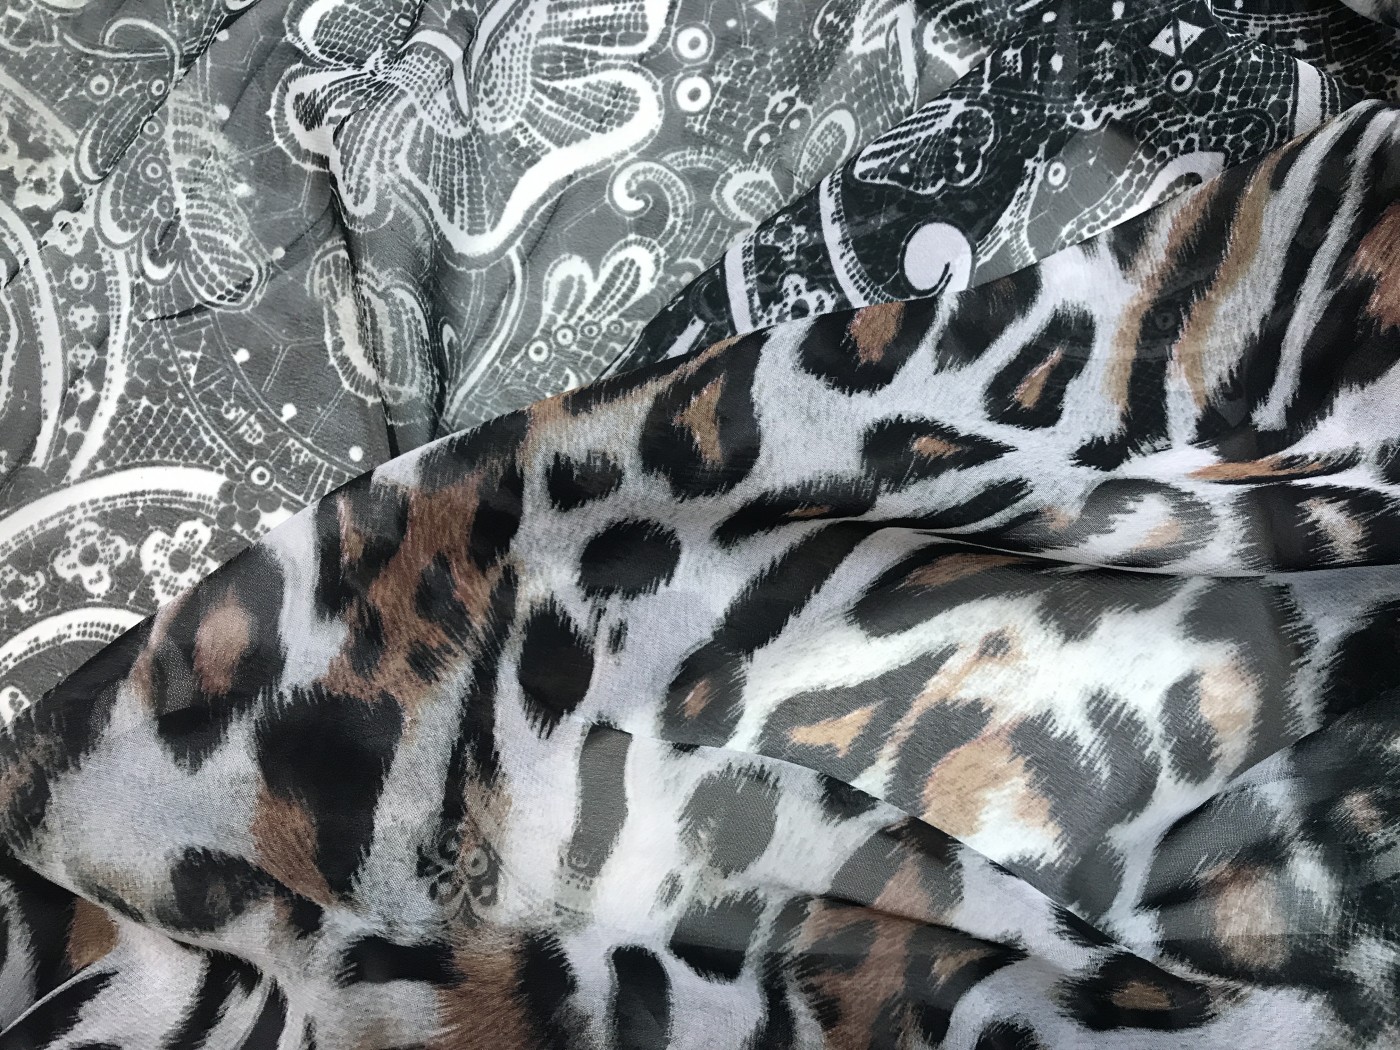 Платья черно белый леопард